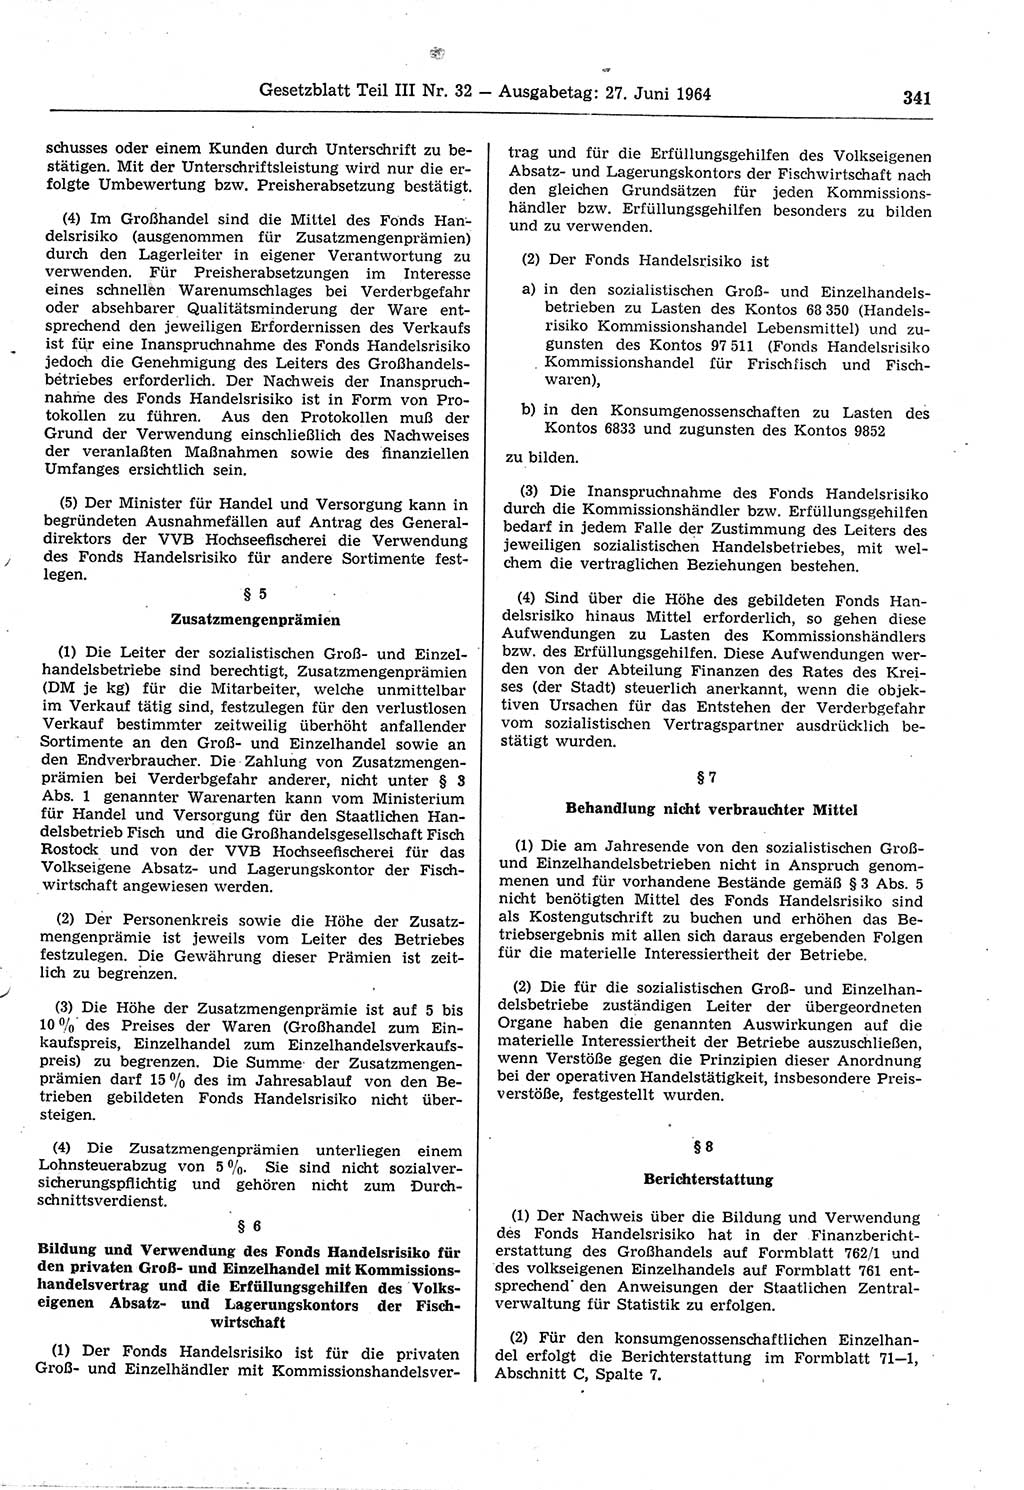 Gesetzblatt (GBl.) der Deutschen Demokratischen Republik (DDR) Teil ⅠⅠⅠ 1964, Seite 341 (GBl. DDR ⅠⅠⅠ 1964, S. 341)